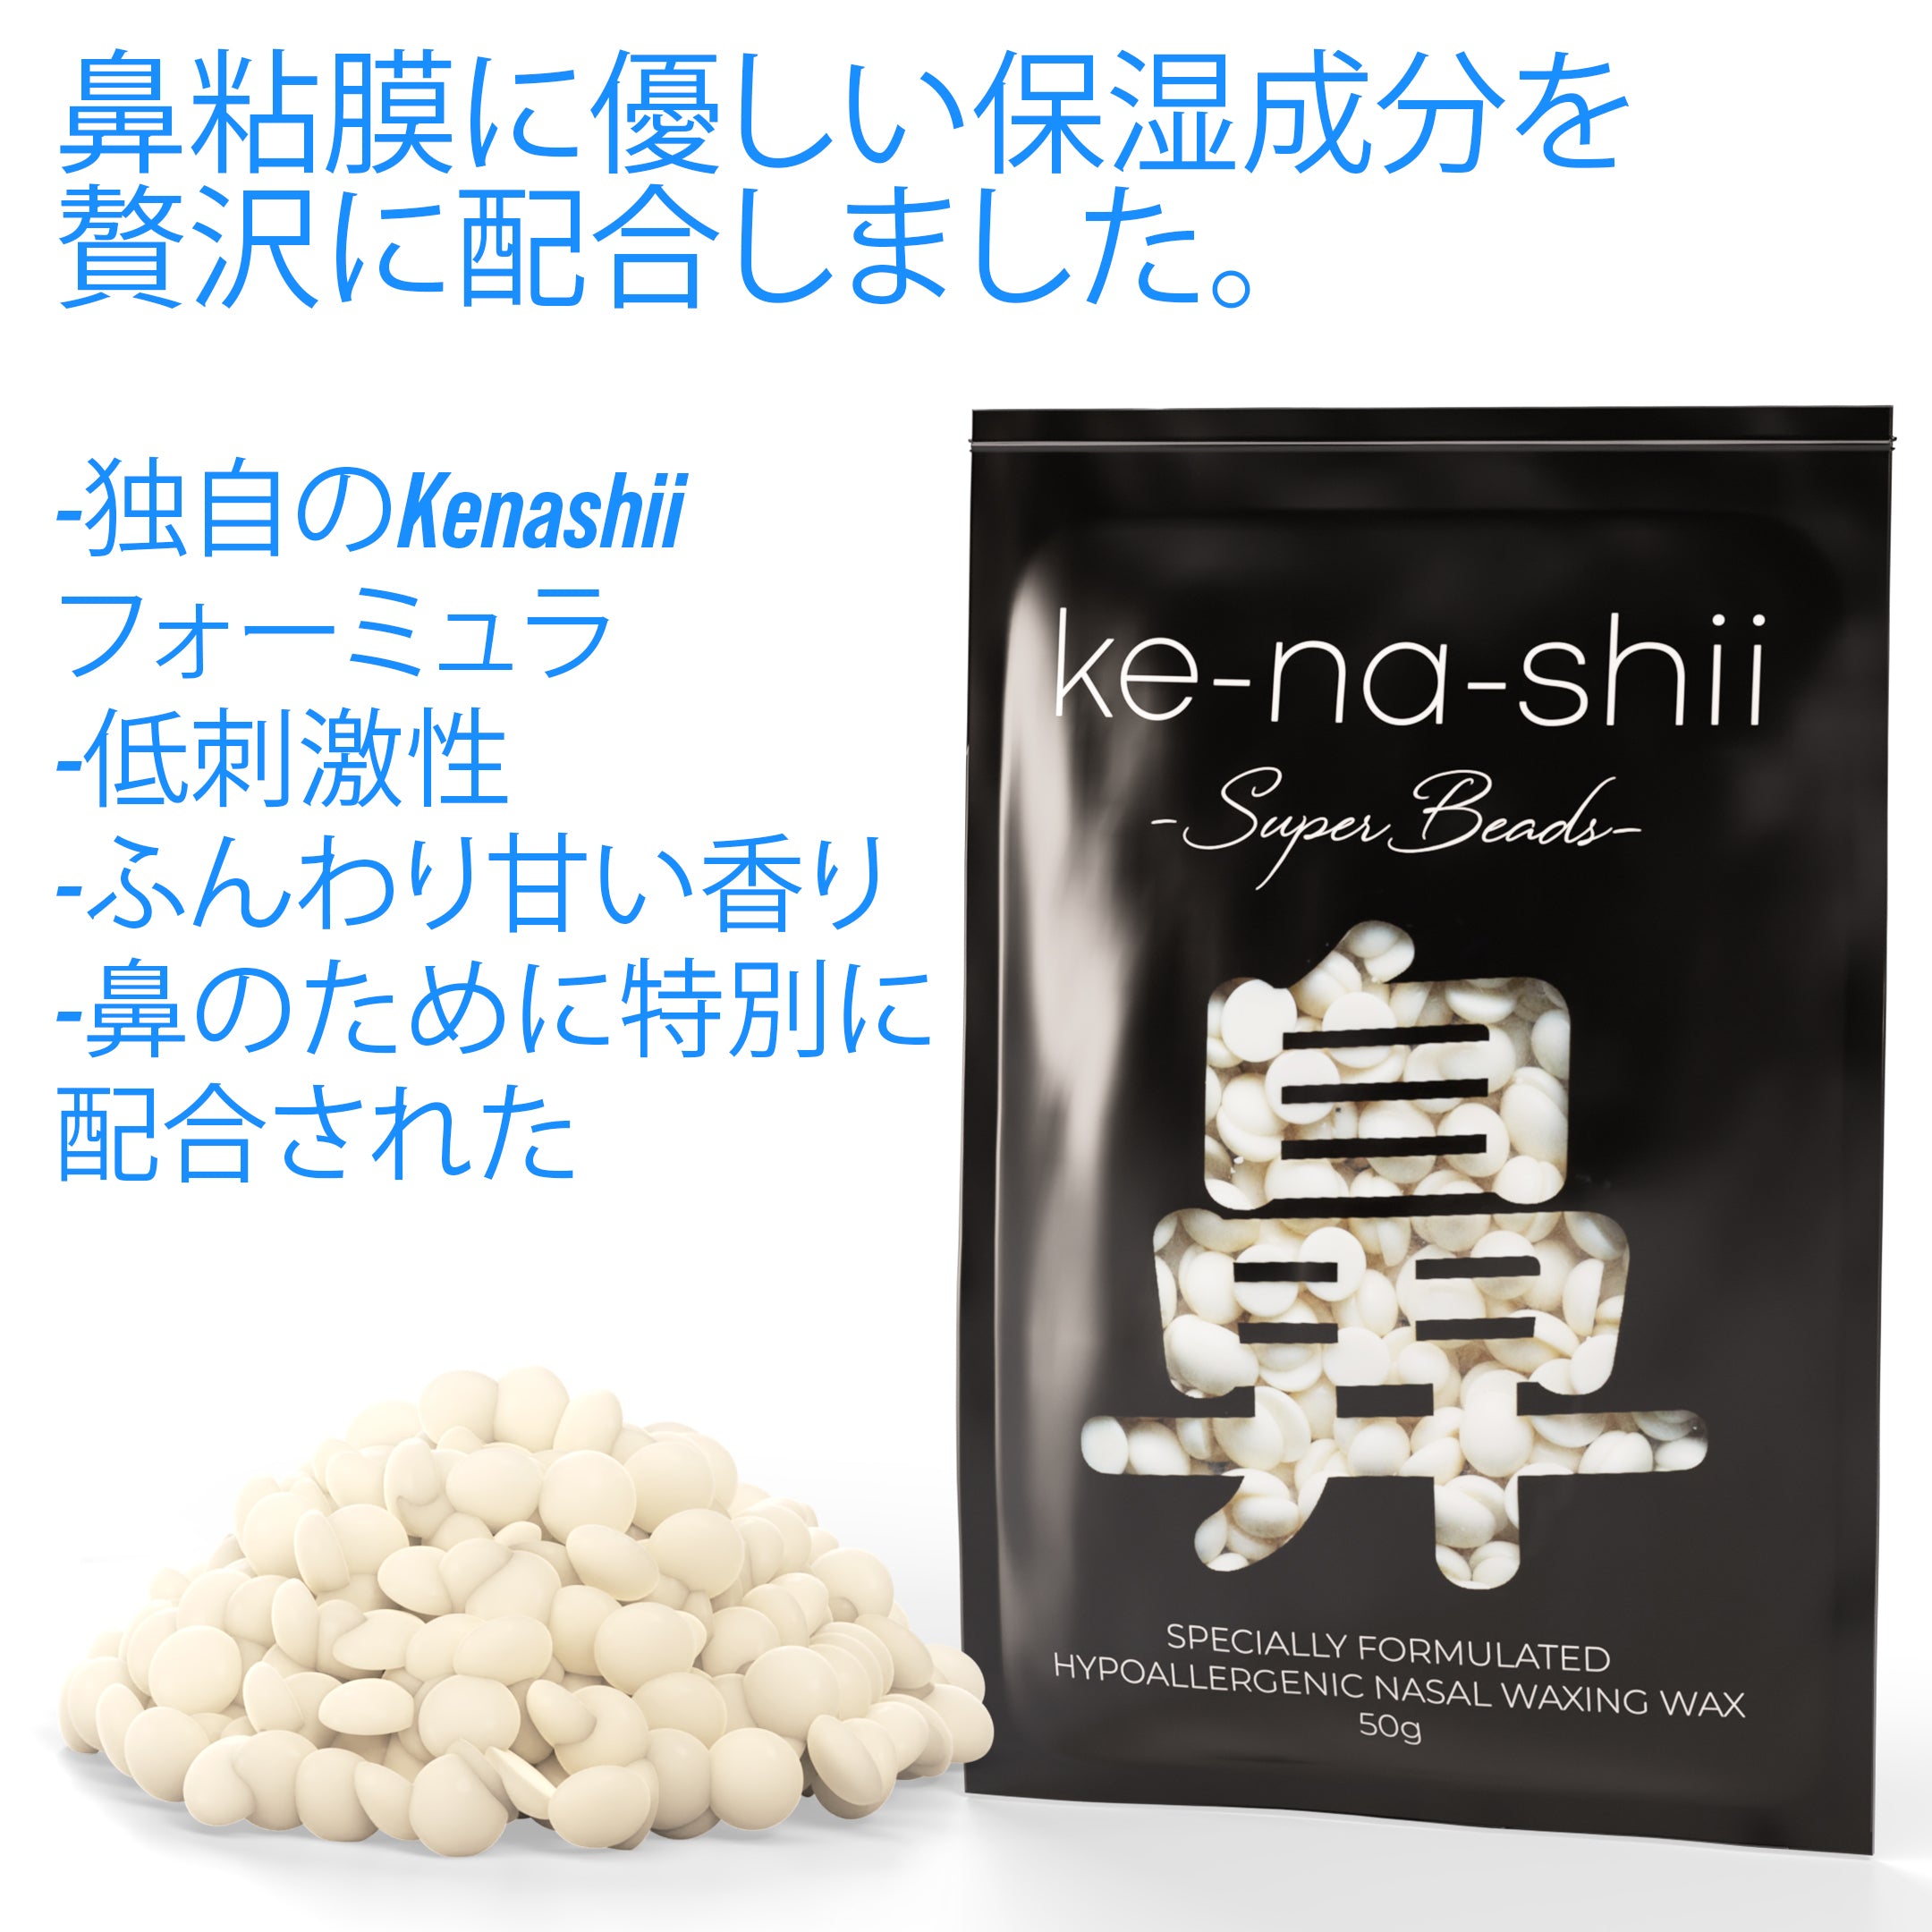 Kenashii Nose Waxing Kit - Japan